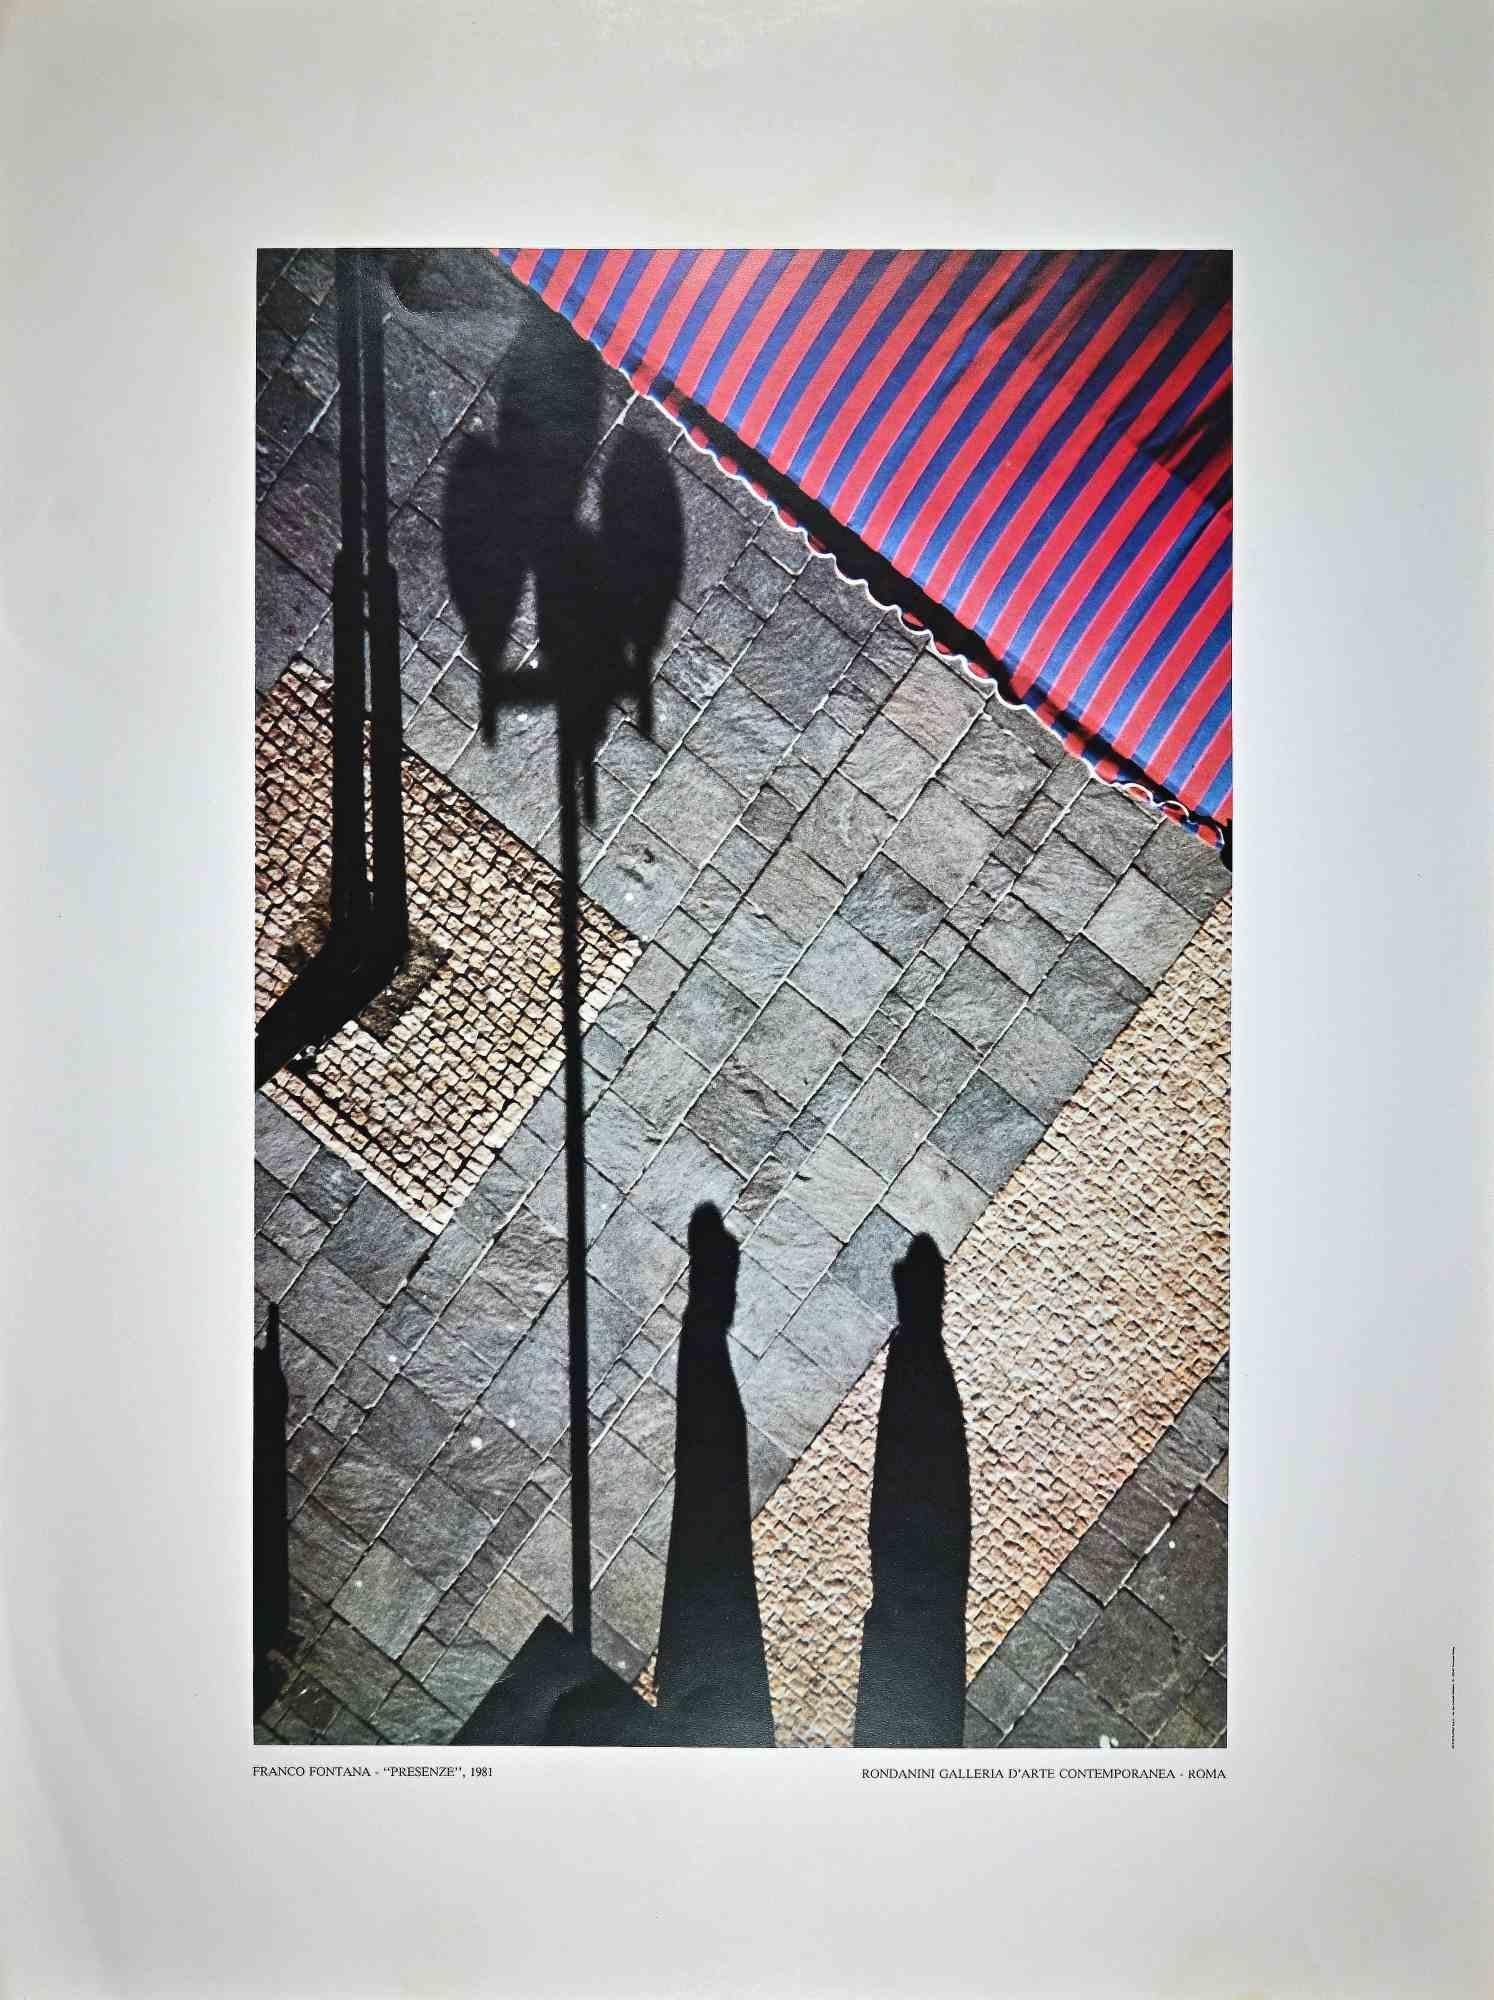 Presenze est une affiche vintage d'après une photographie réalisée par Franco Fontana en 1981.

Impression offset. Rondanini Galleria D'arte Contemporanea - Roma.

Titre en bas. 

Excellentes conditions.